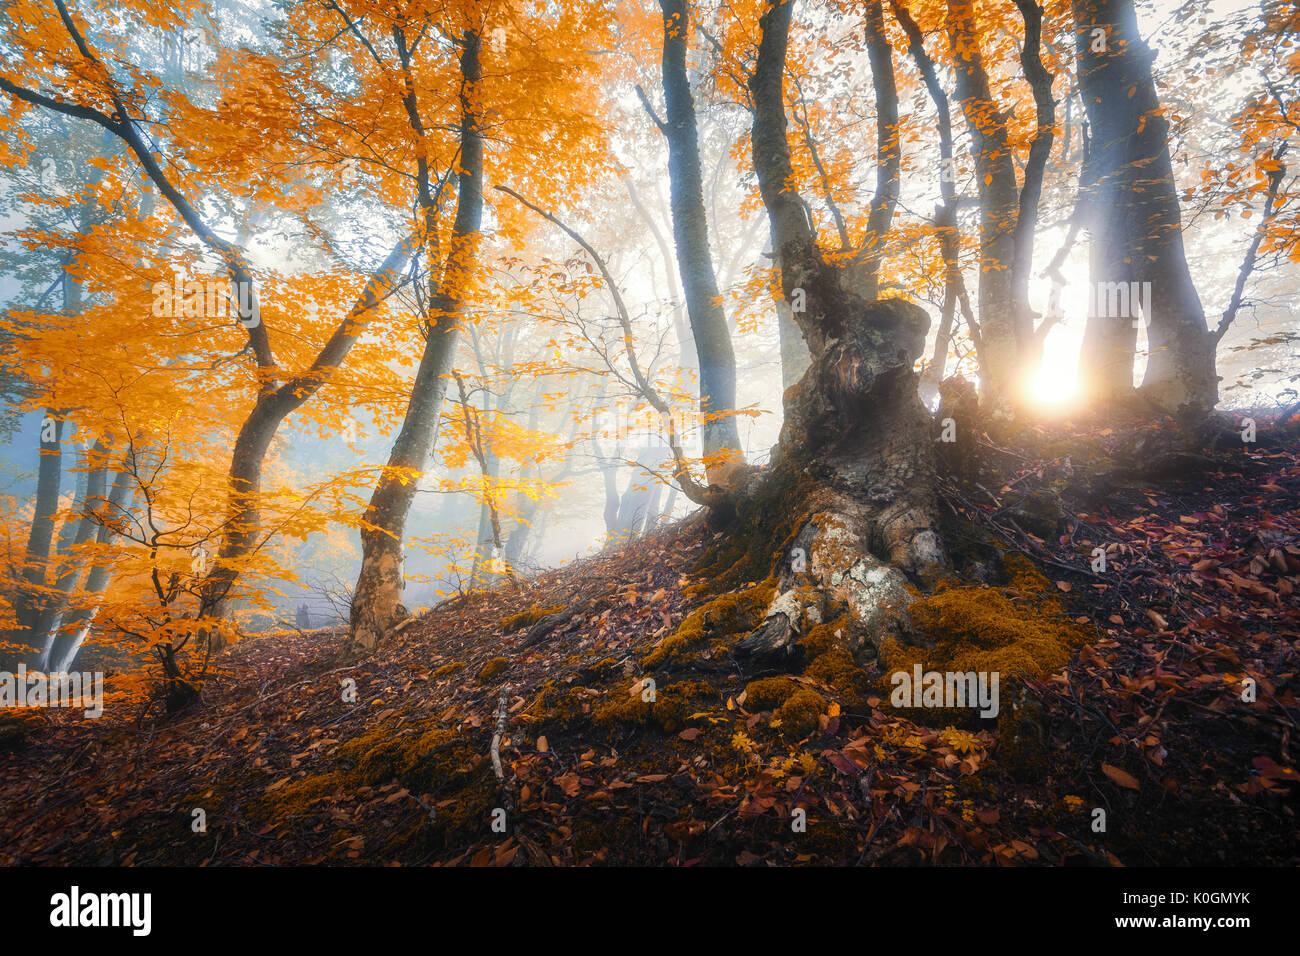 Magica vecchio albero con raggi di sole del mattino. Foresta di sorprendente nella nebbia. Paesaggio colorato con foggy forest, oro la luce solare, arancio fogliame di sunrise. Foto Stock